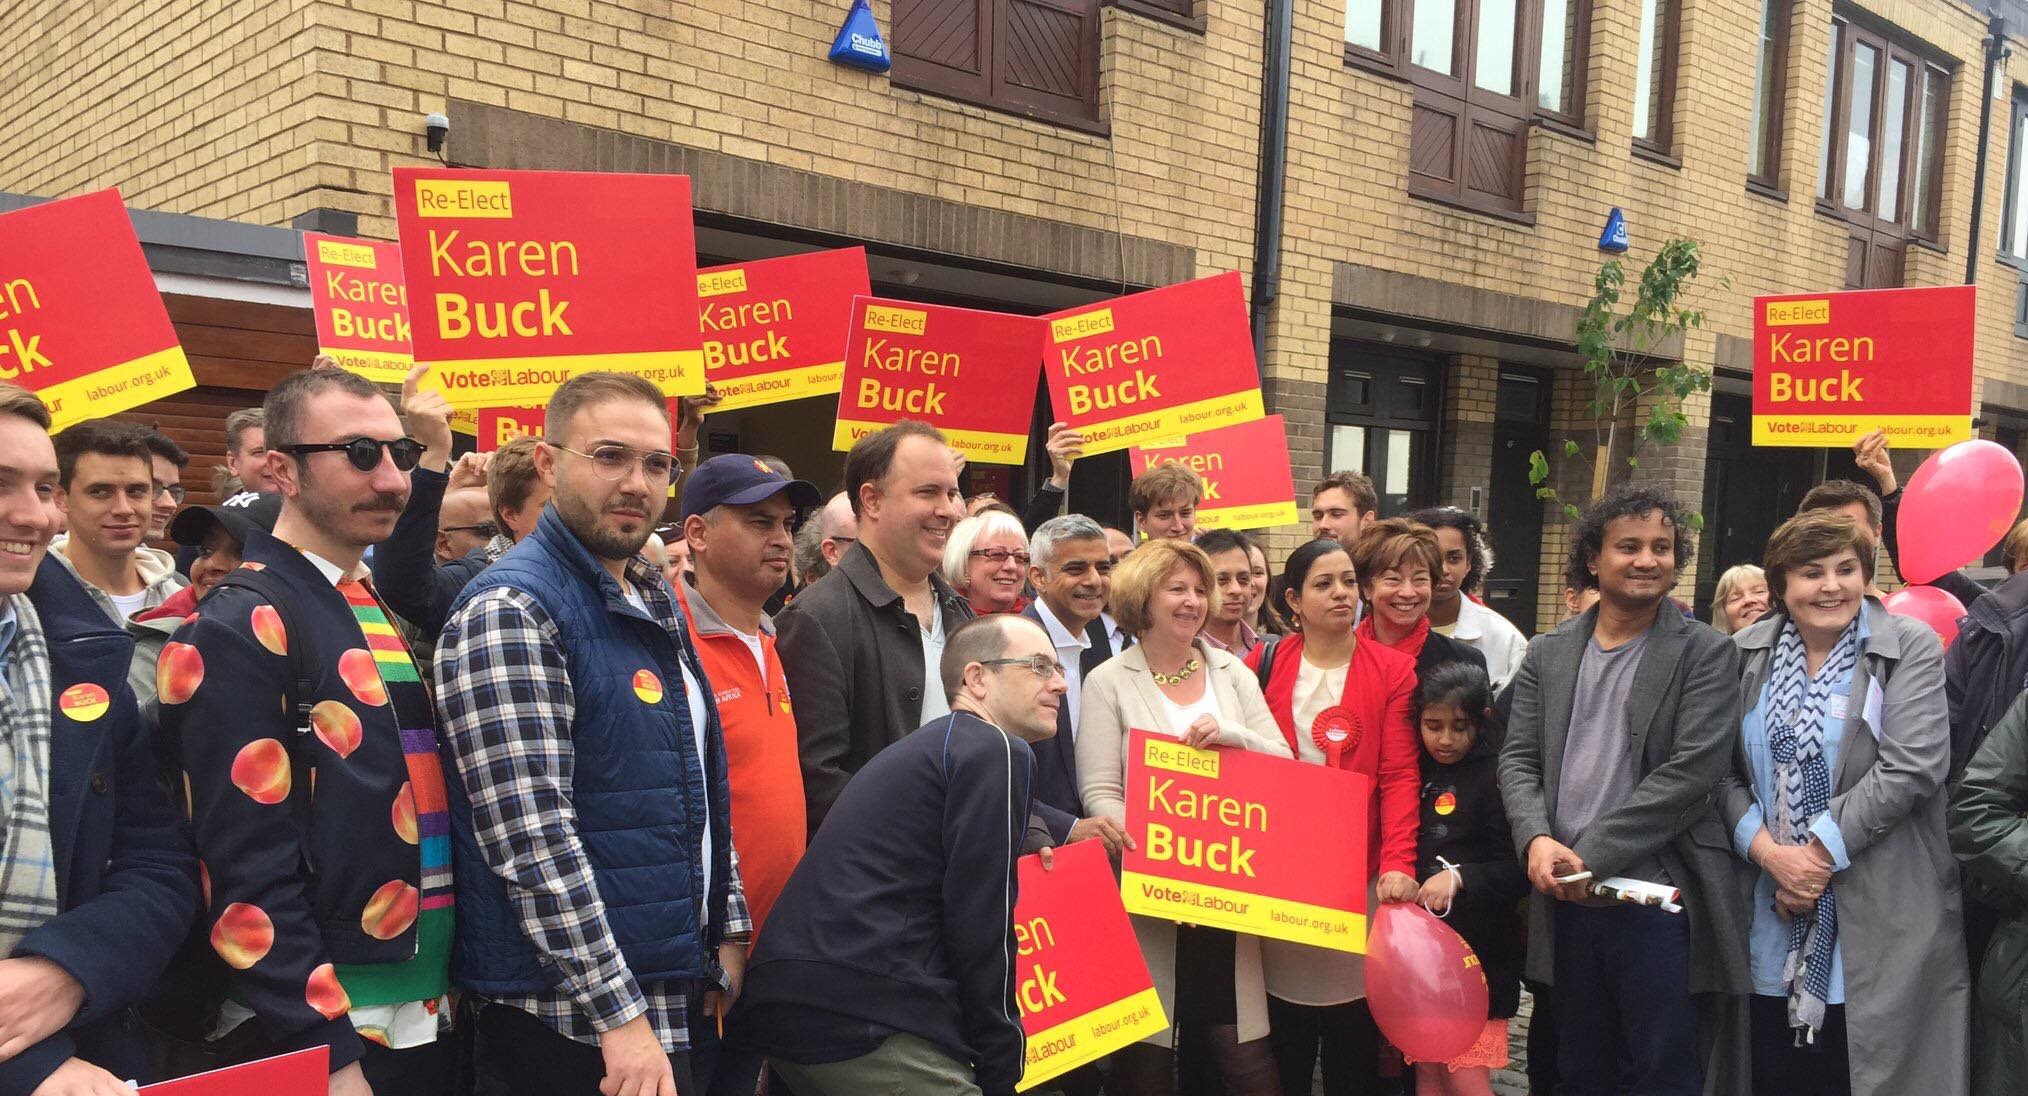 Members with Karen Buck MP